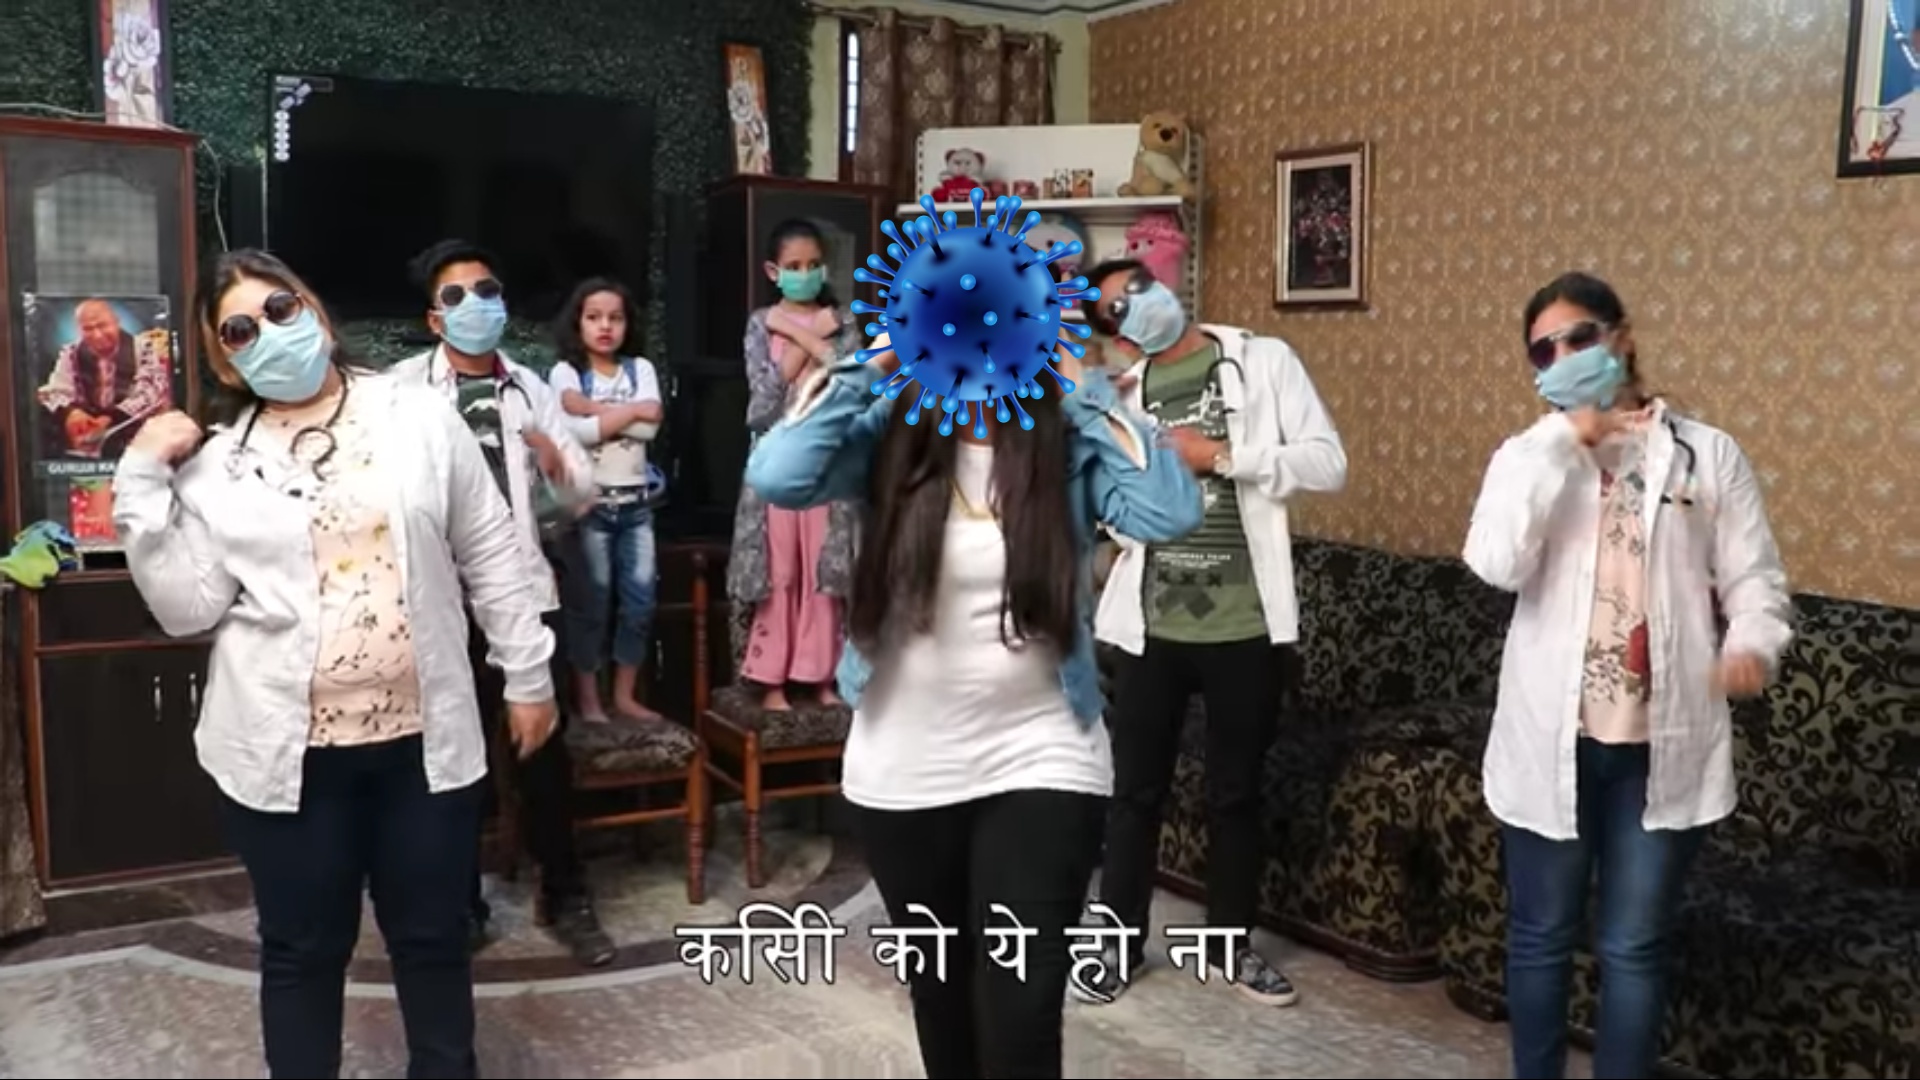 Dhinchak Pooja Coronavirus song